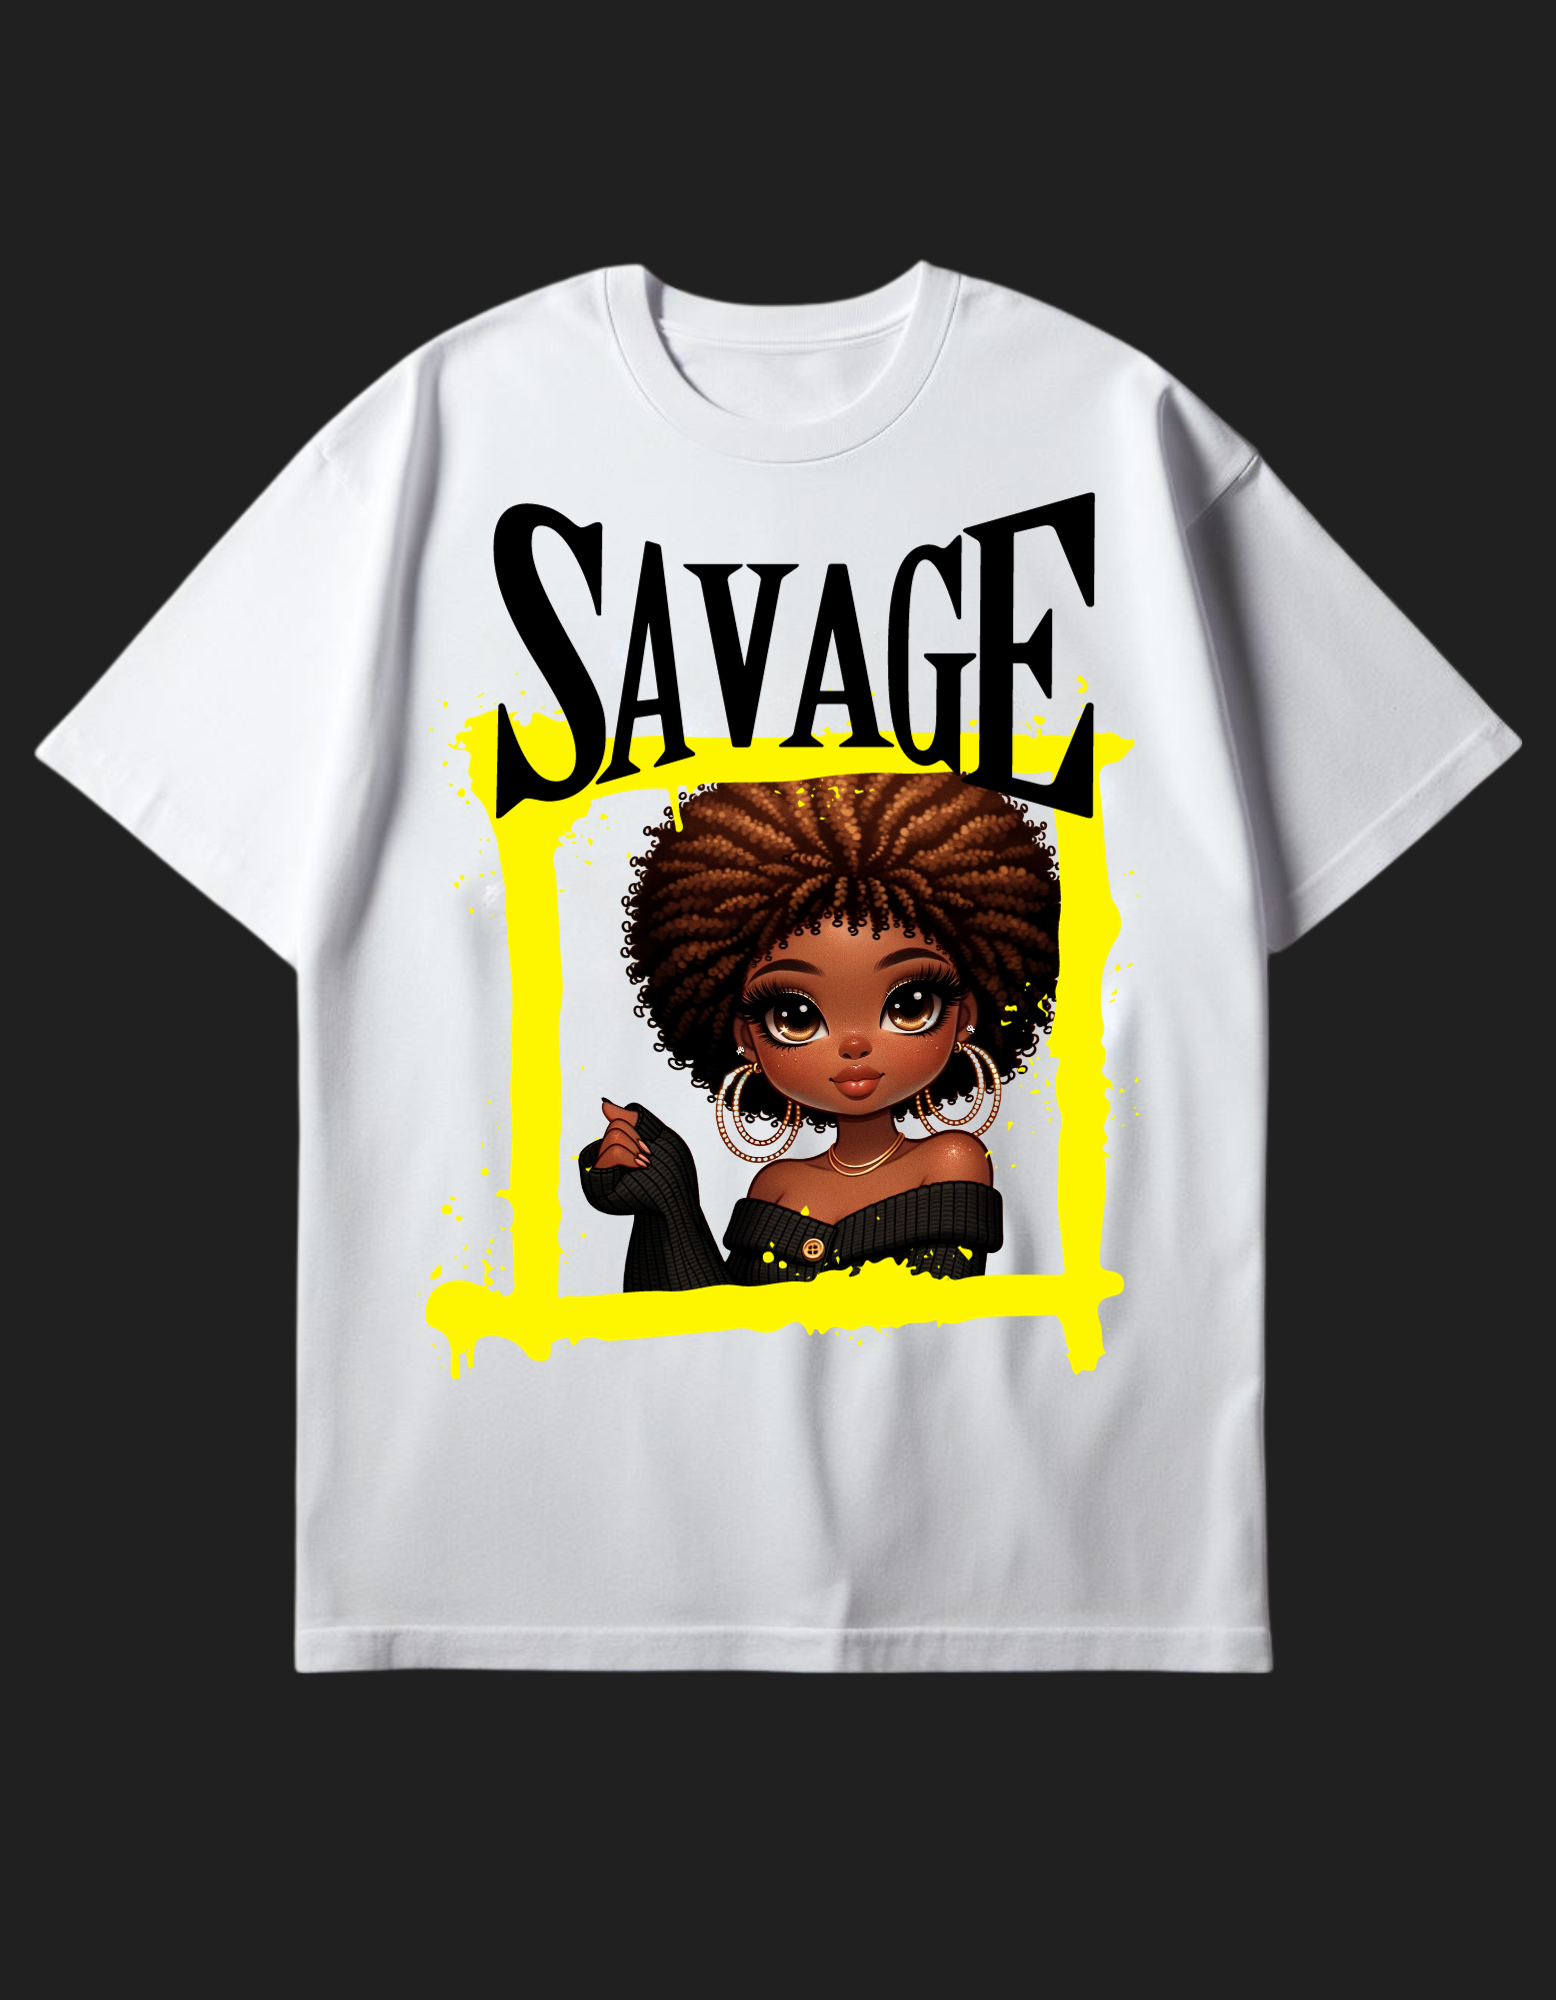 Savage Tshirt